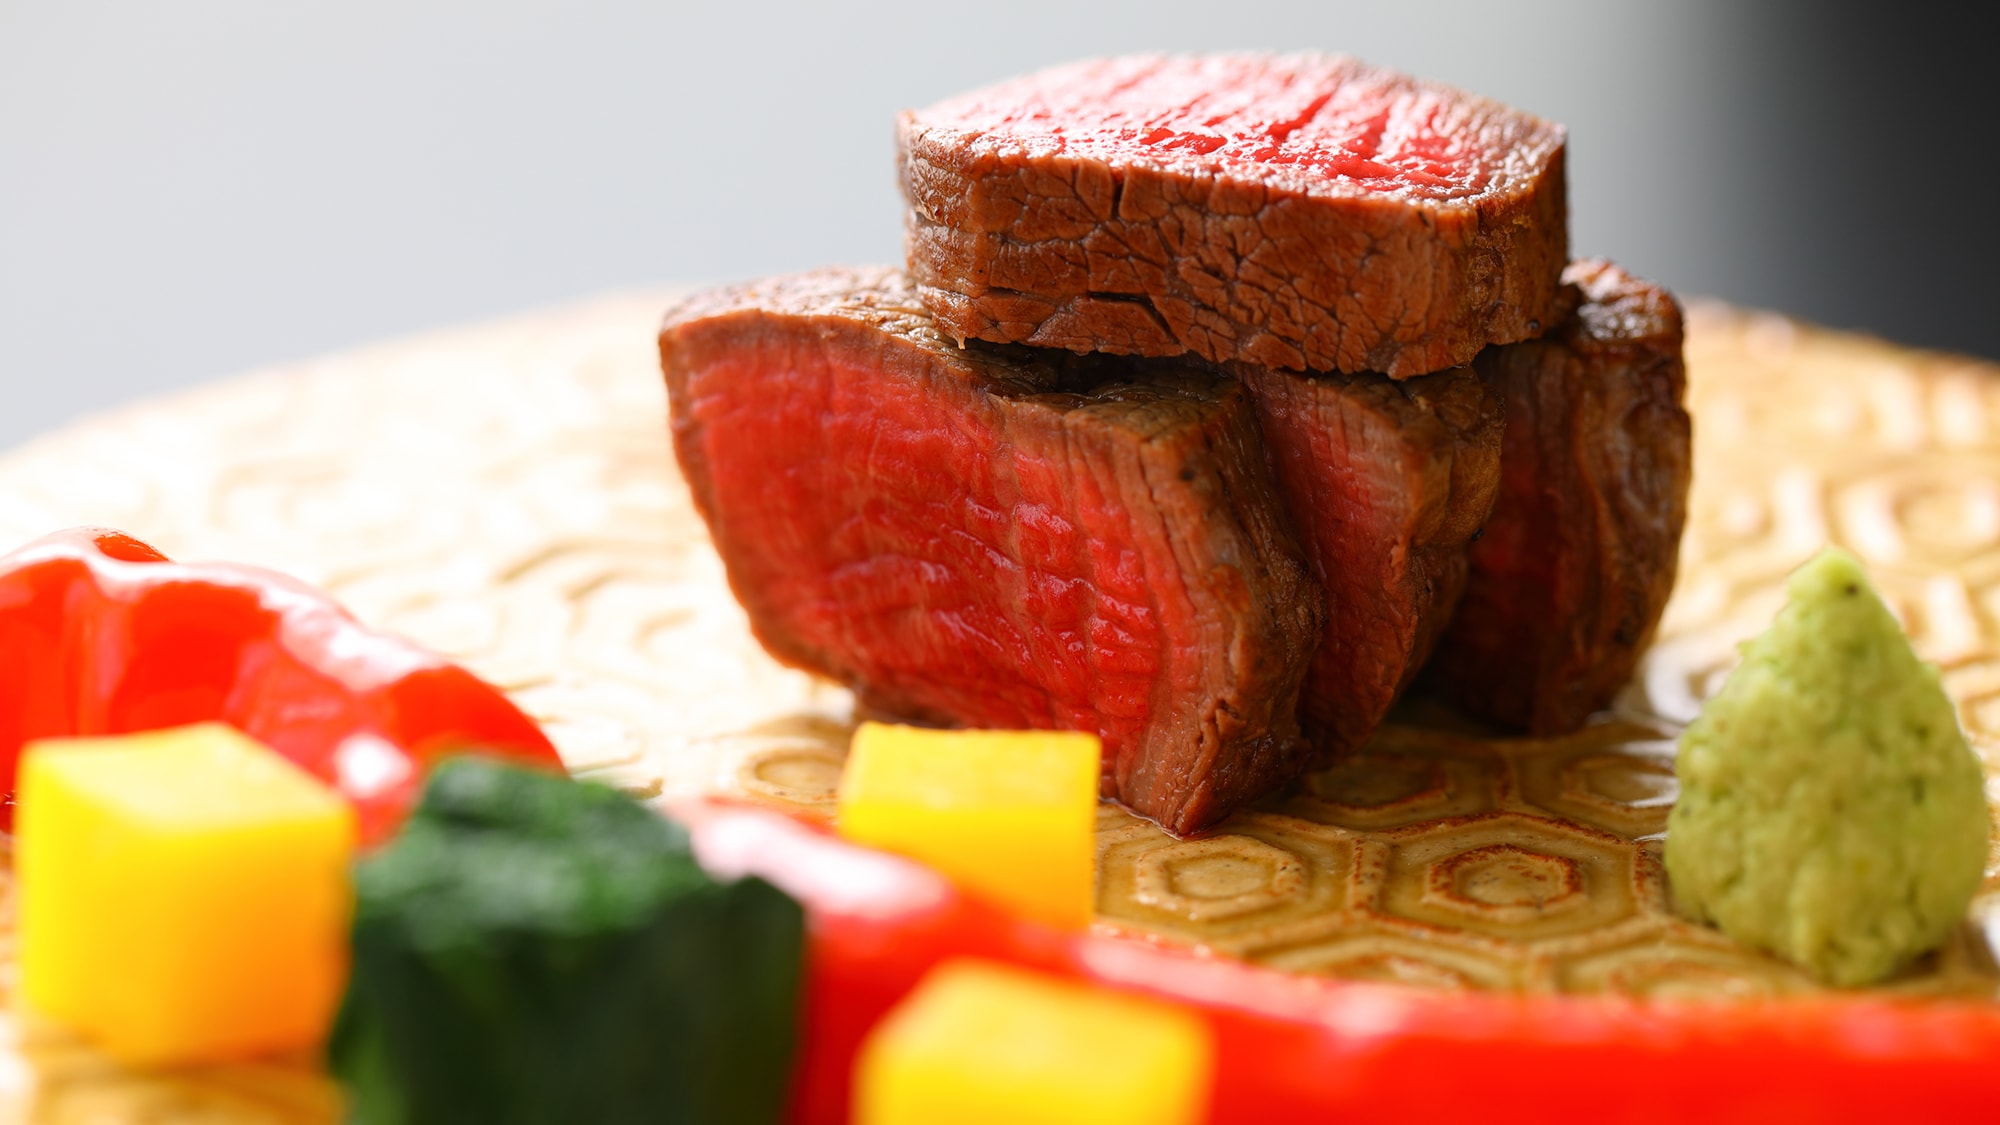 [Contoh Kaiseki] Daging sapi merek Oita, steak daging sapi Bungo dengan sayuran Yufuin dalam saus buatan sendiri.